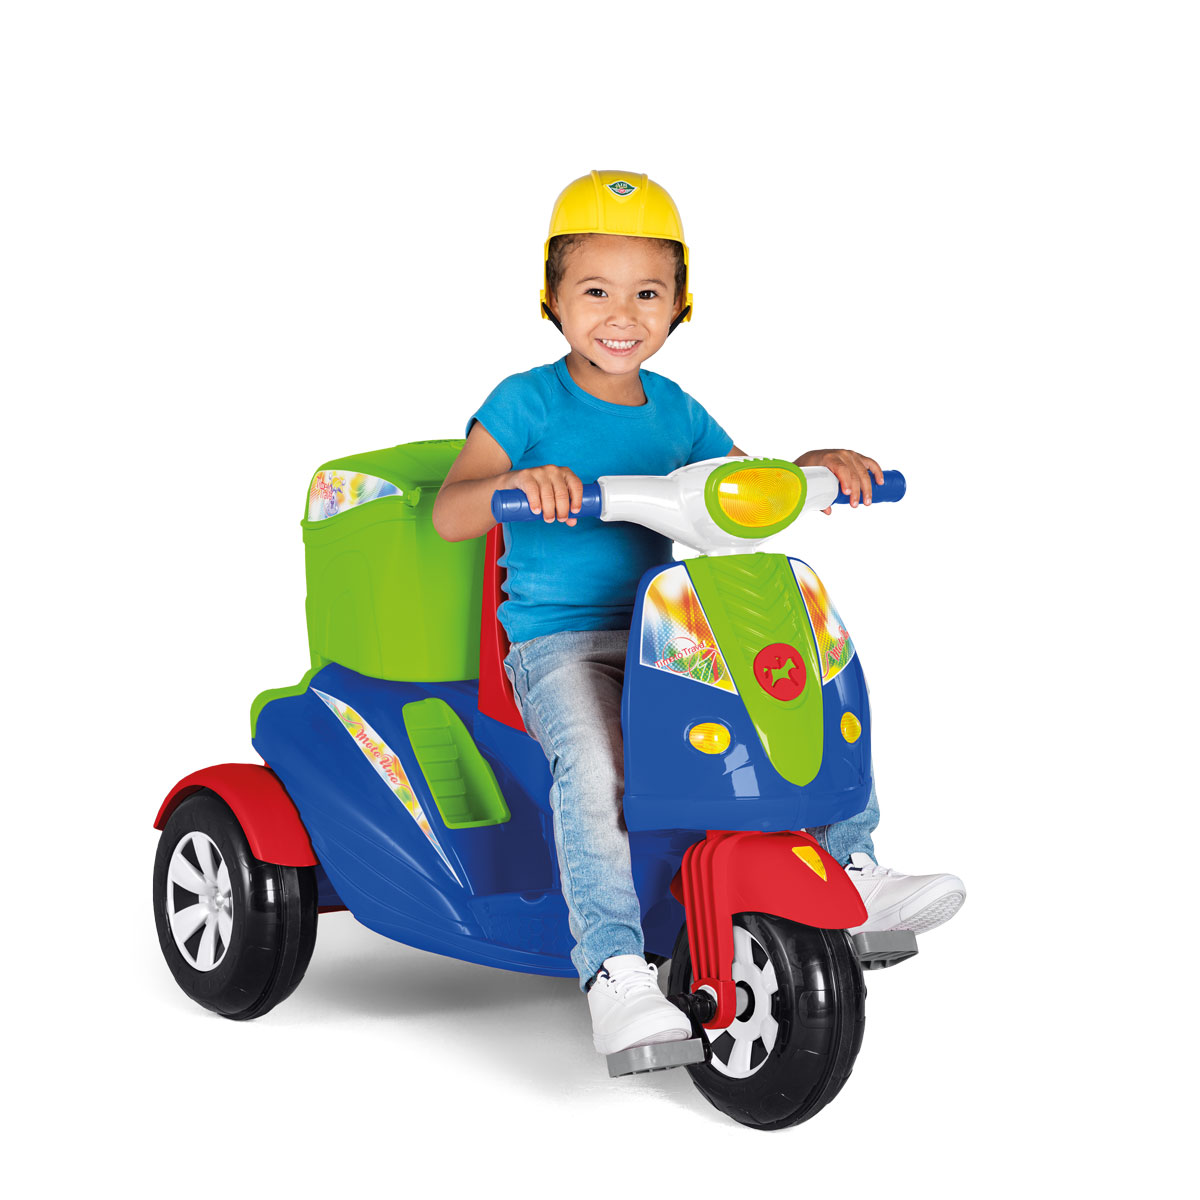 Moto Duo - Calesita Brinquedos